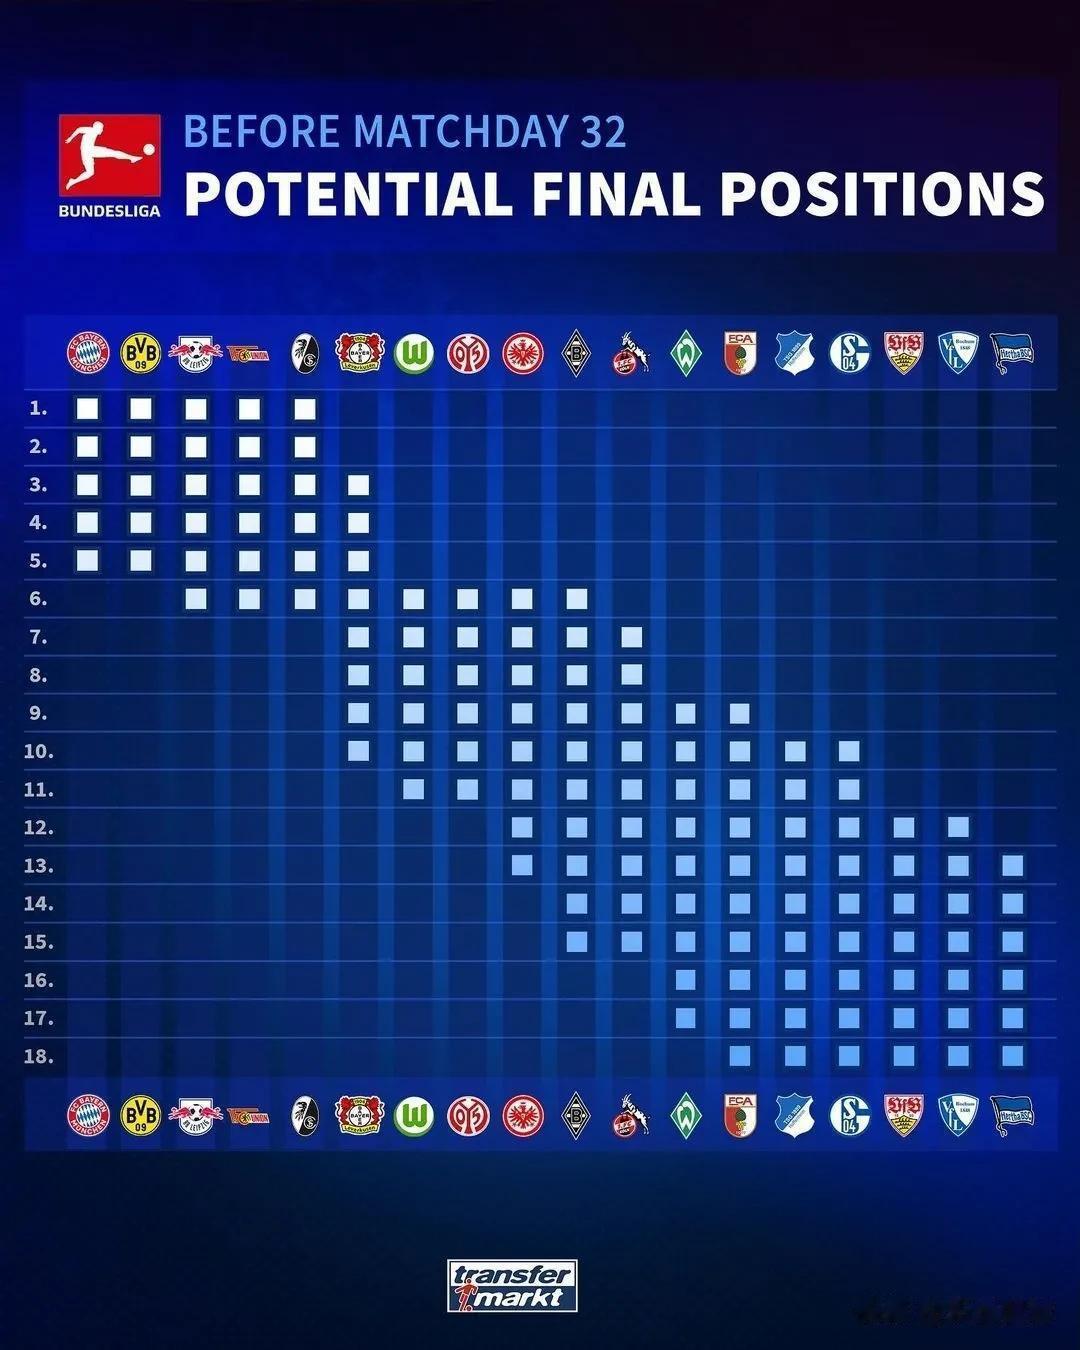 英超、西甲和德甲联赛，各支球队理论上的最终排名。切尔西提前保级成功，西甲有14支(3)